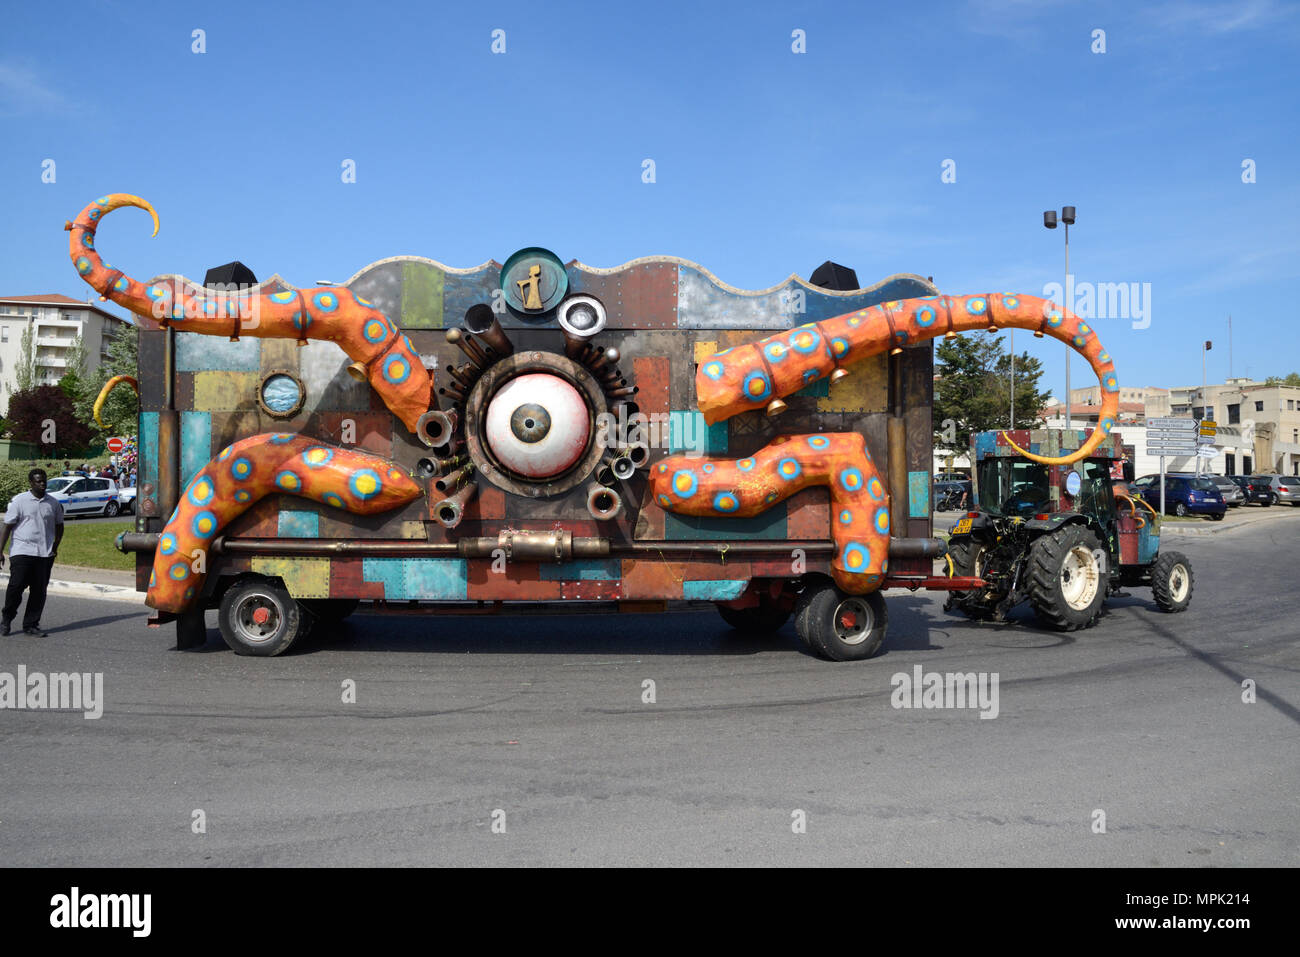 Carnival flottent dans la forme d'une pieuvre ou étrange créature One-Eyed tentaculaires tiré par un tracteur, Aix-en-Provence Provence France Banque D'Images